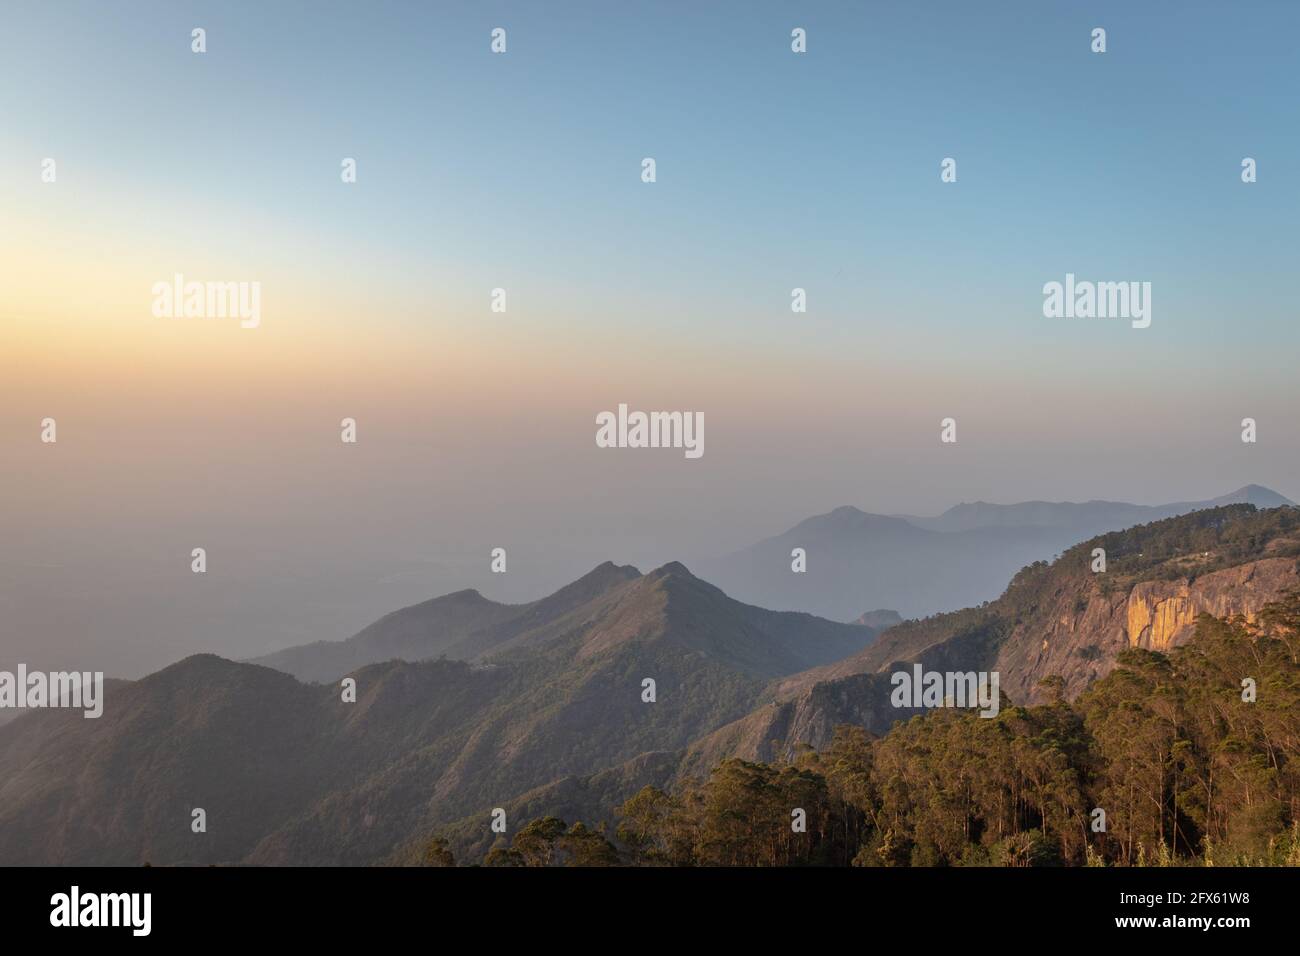 Hügel mit blauem Himmel Hintergrund Bild aufgenommen am Kodaikanal tamilnadu Indien von der Spitze des Hügels. Bild zeigt die schöne Natur. Stockfoto